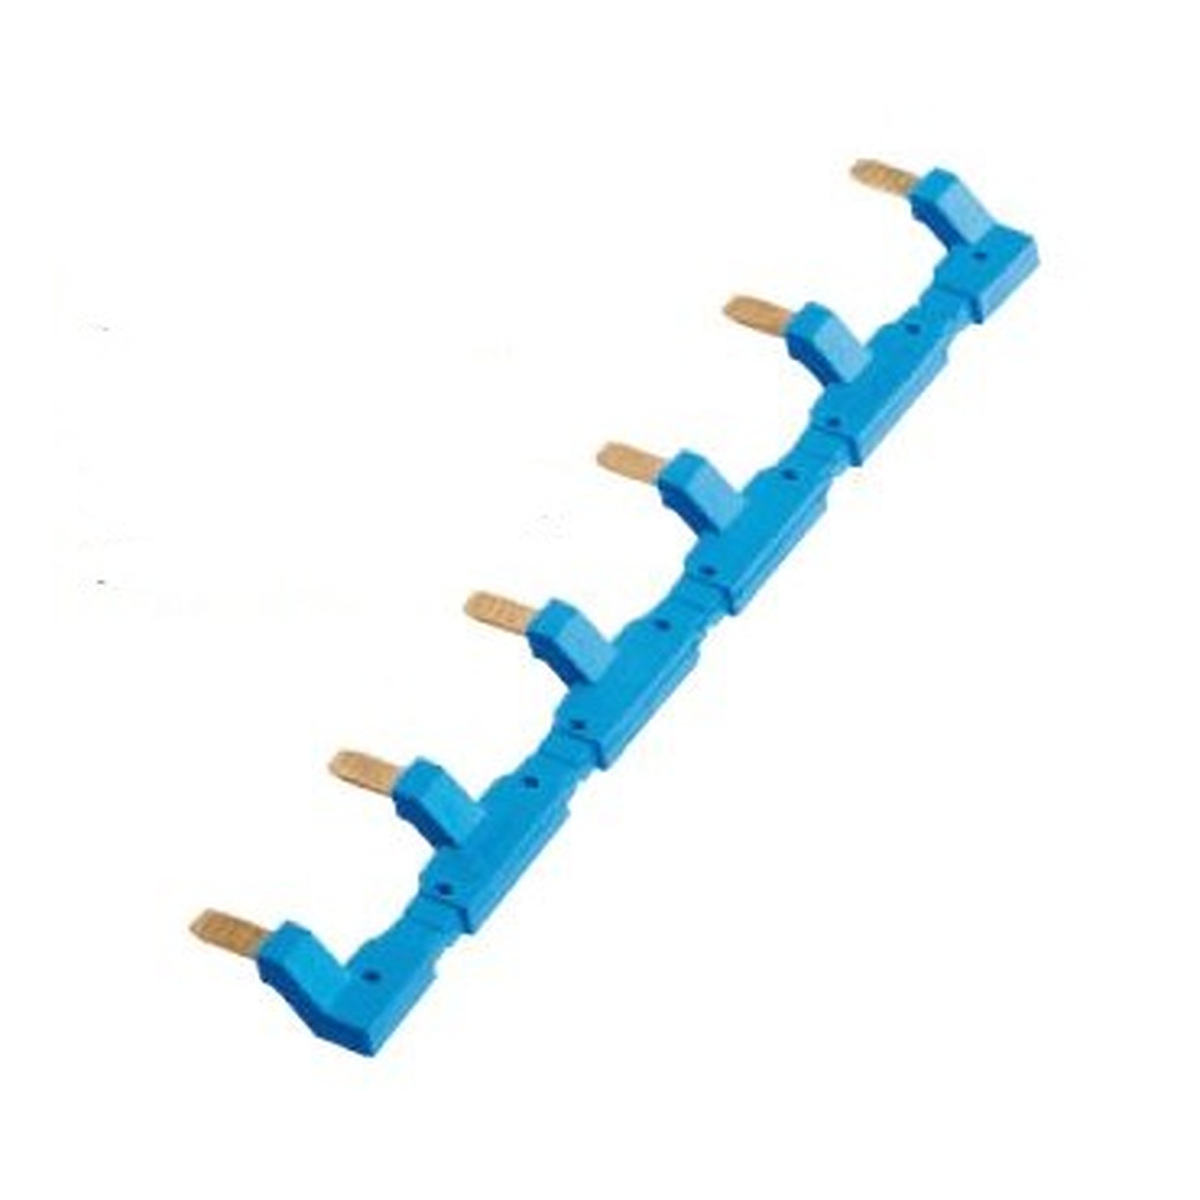 9456 - Connecteur de pneu 6 pôles pour douilles 94.54 ; bleu - Finder - 0